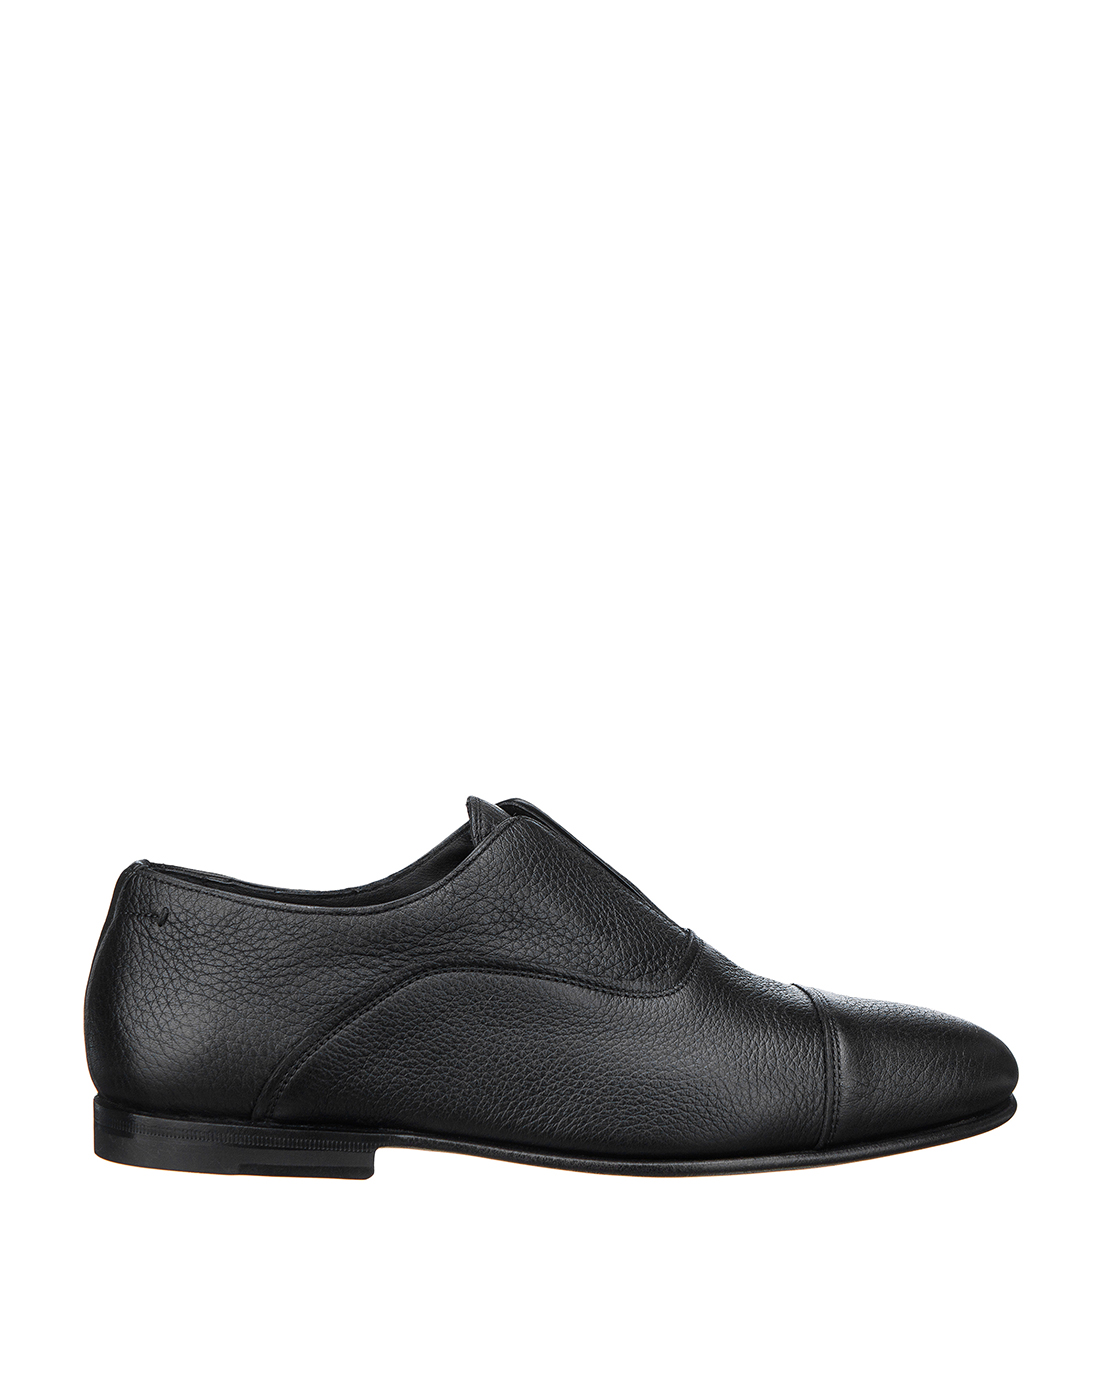 Туфли черные мужские Santoni S15963 - 01-1